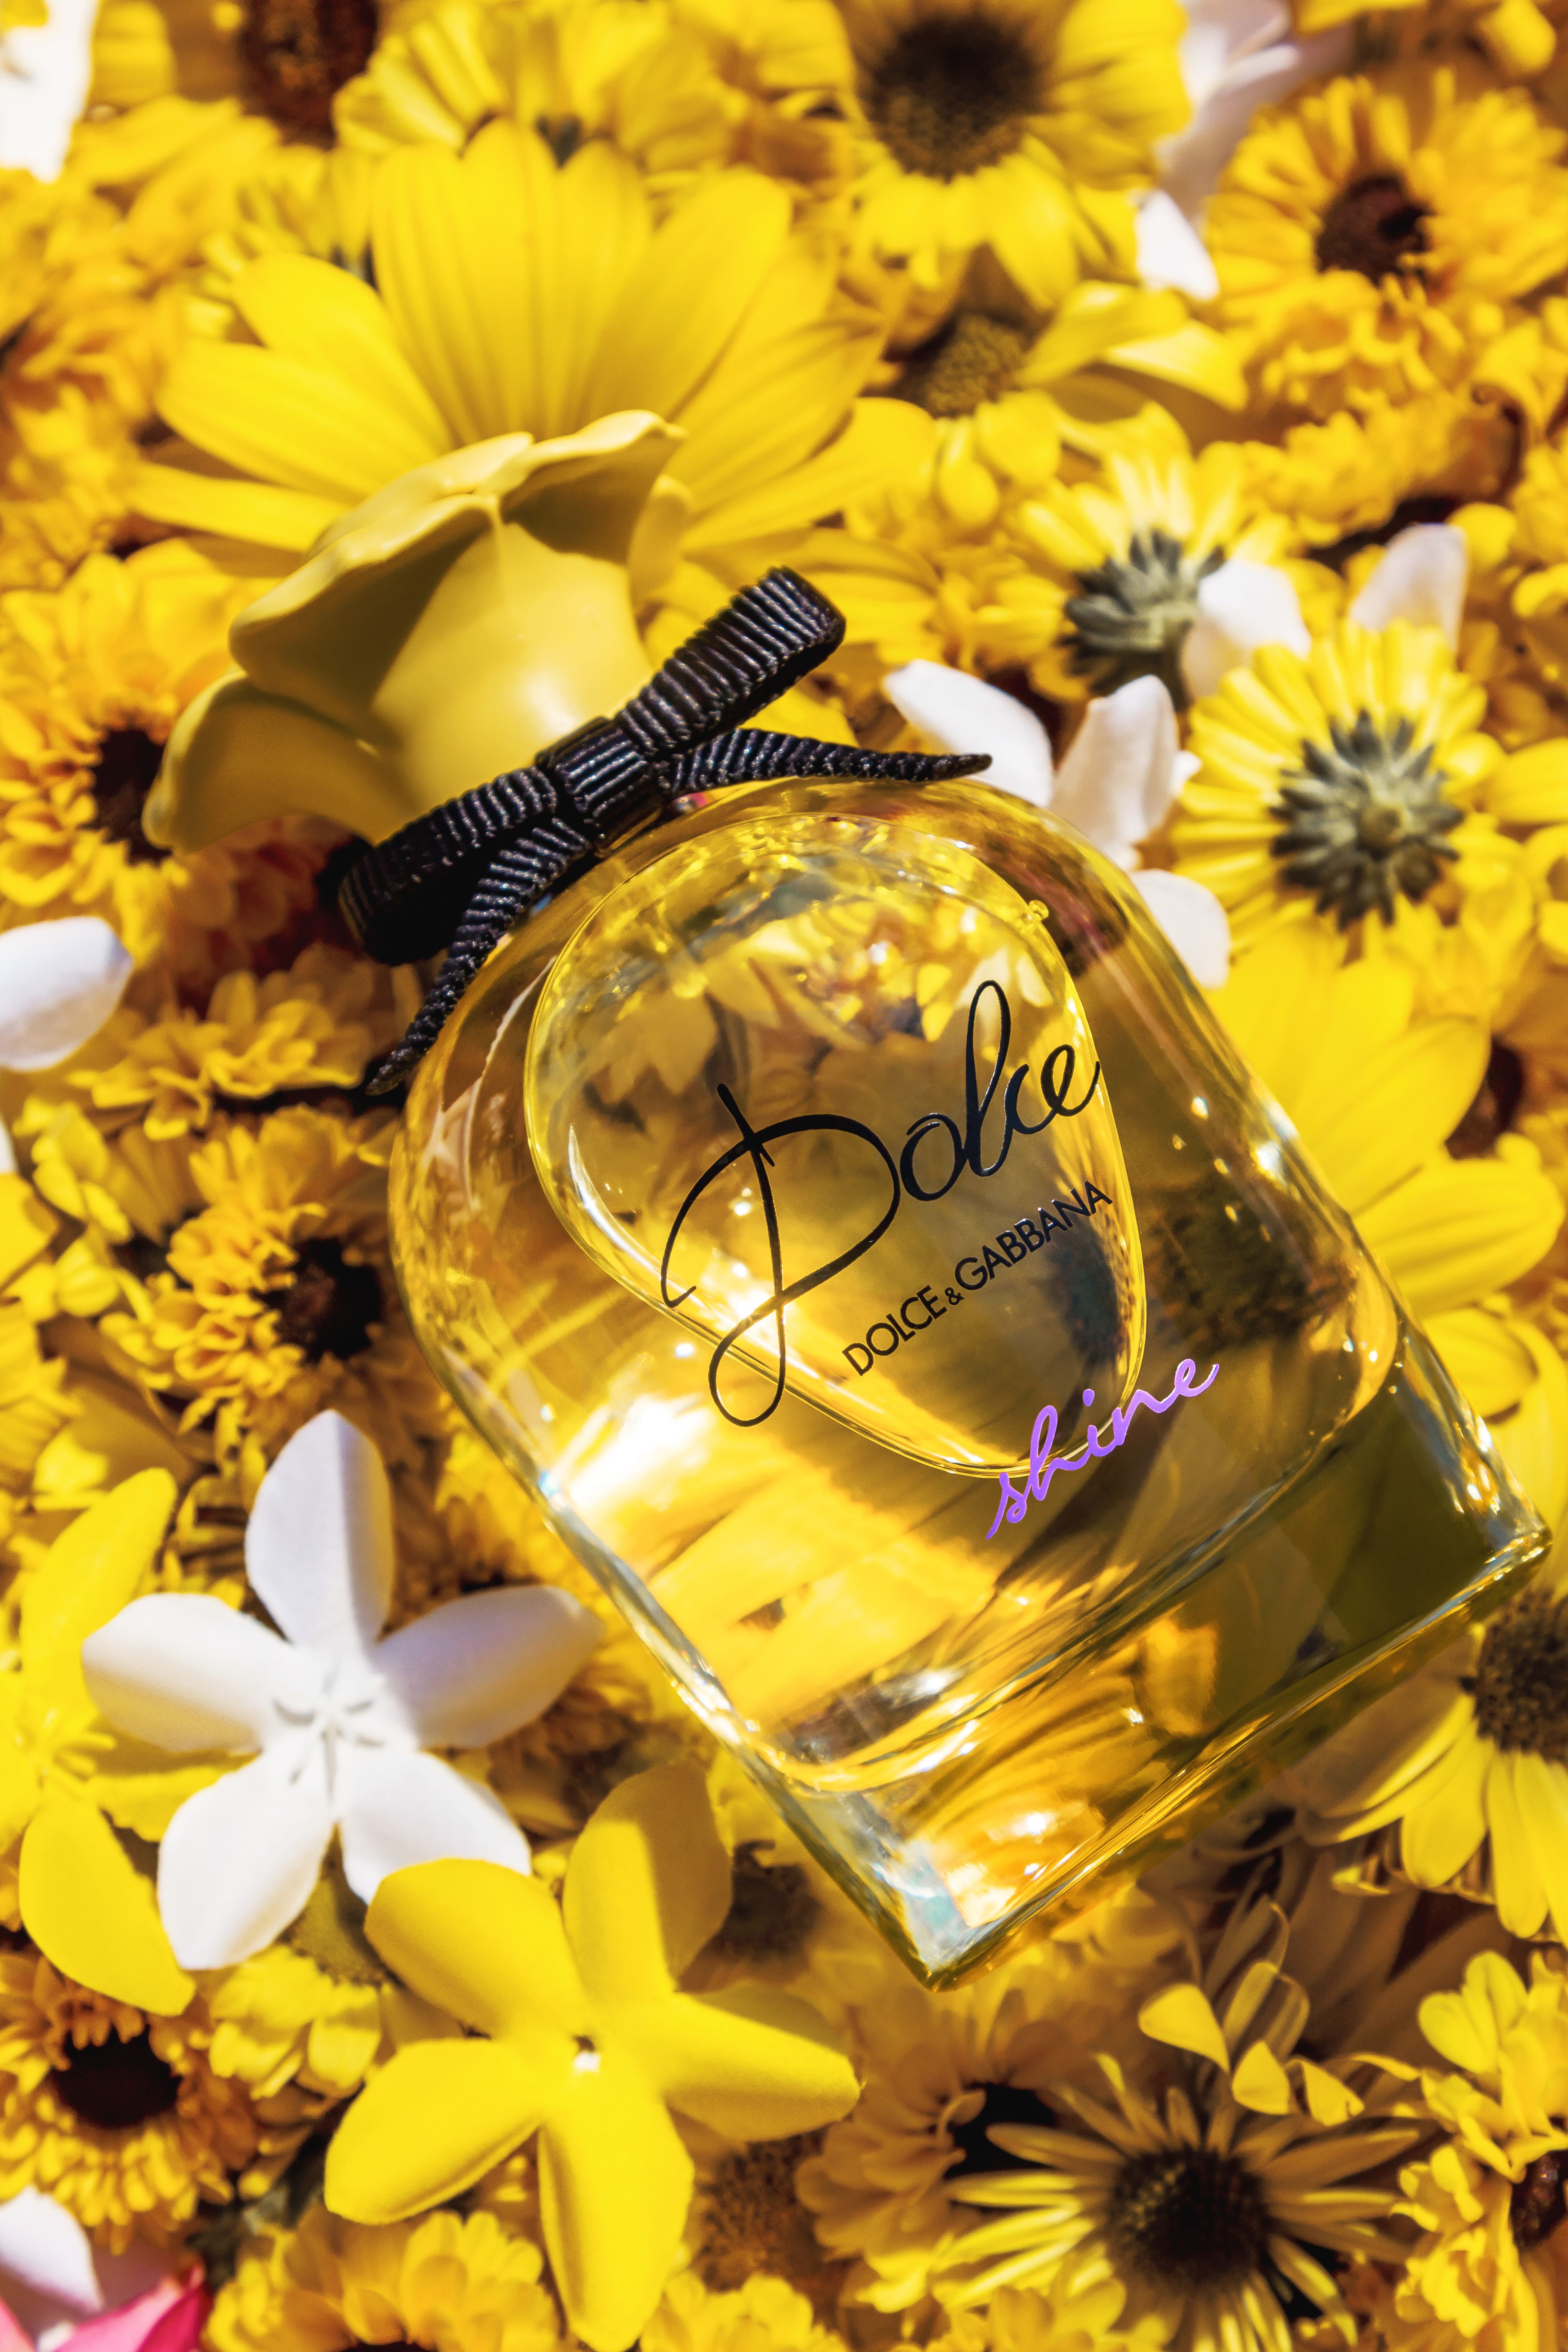 Dolce & Gabbana Dolce Shine Eau De Parfum 5